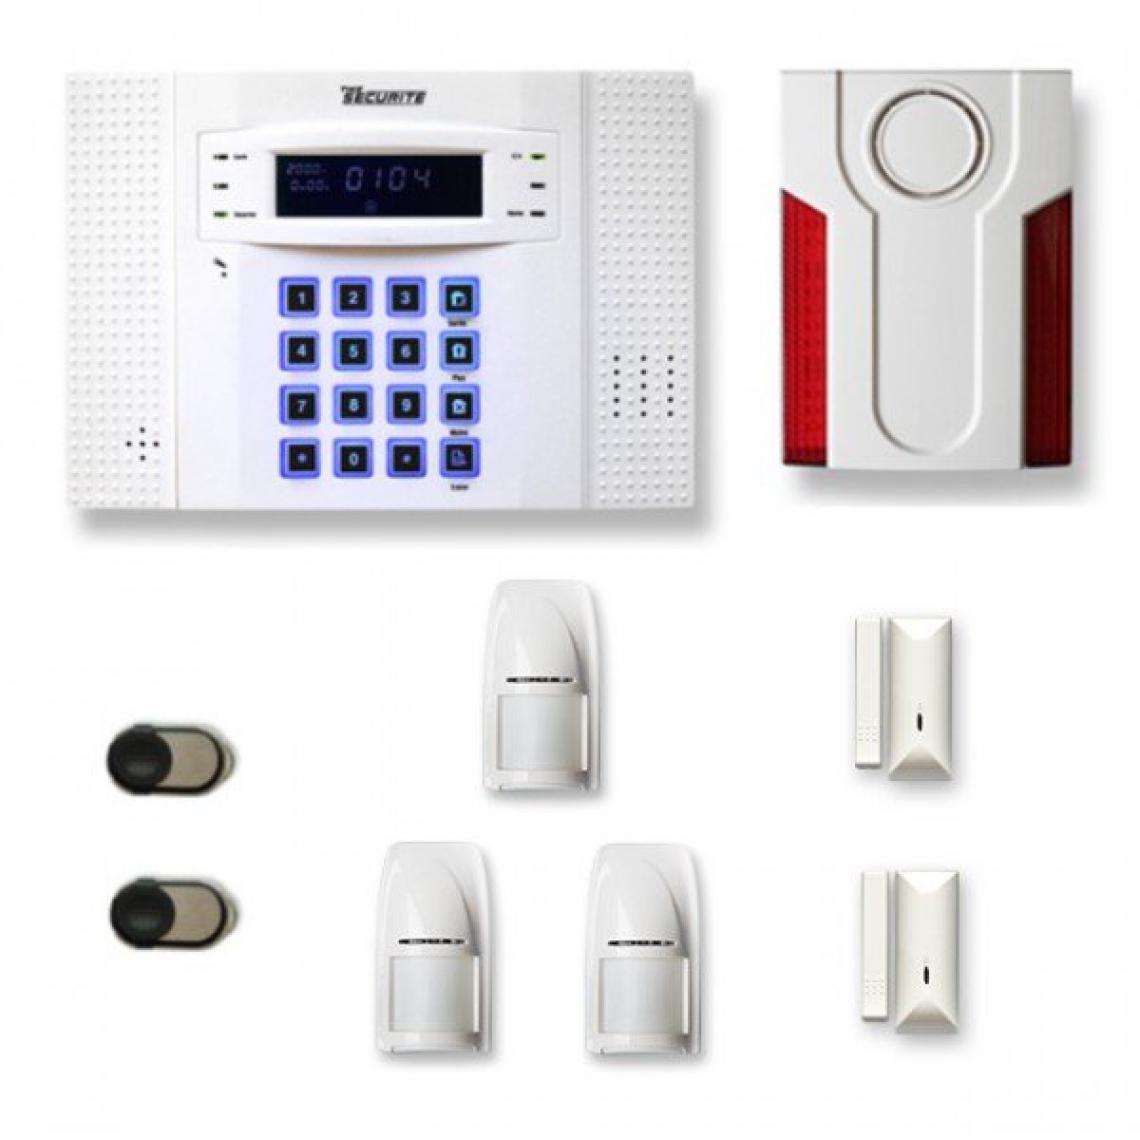 Tike Securite - Alarme maison sans fil DNB27 Compatible Box internet et GSM - Alarme connectée